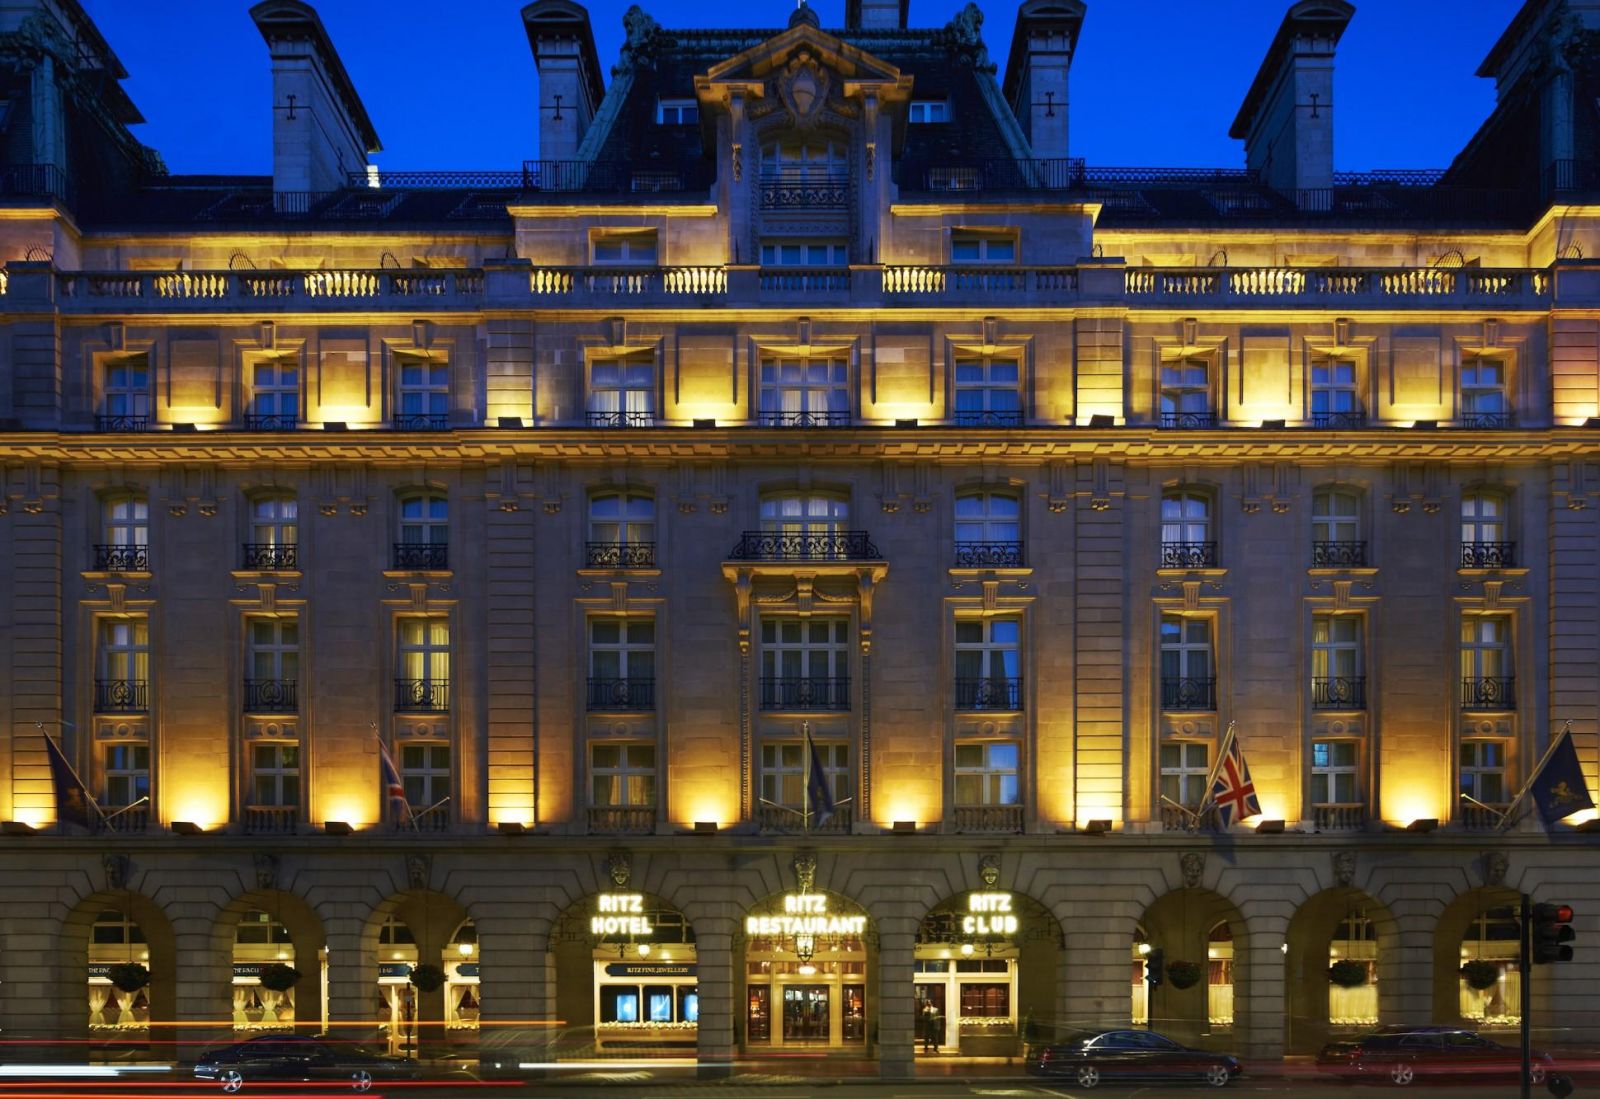 The Ritz - Một biểu tượng ngành khách sạn một thời